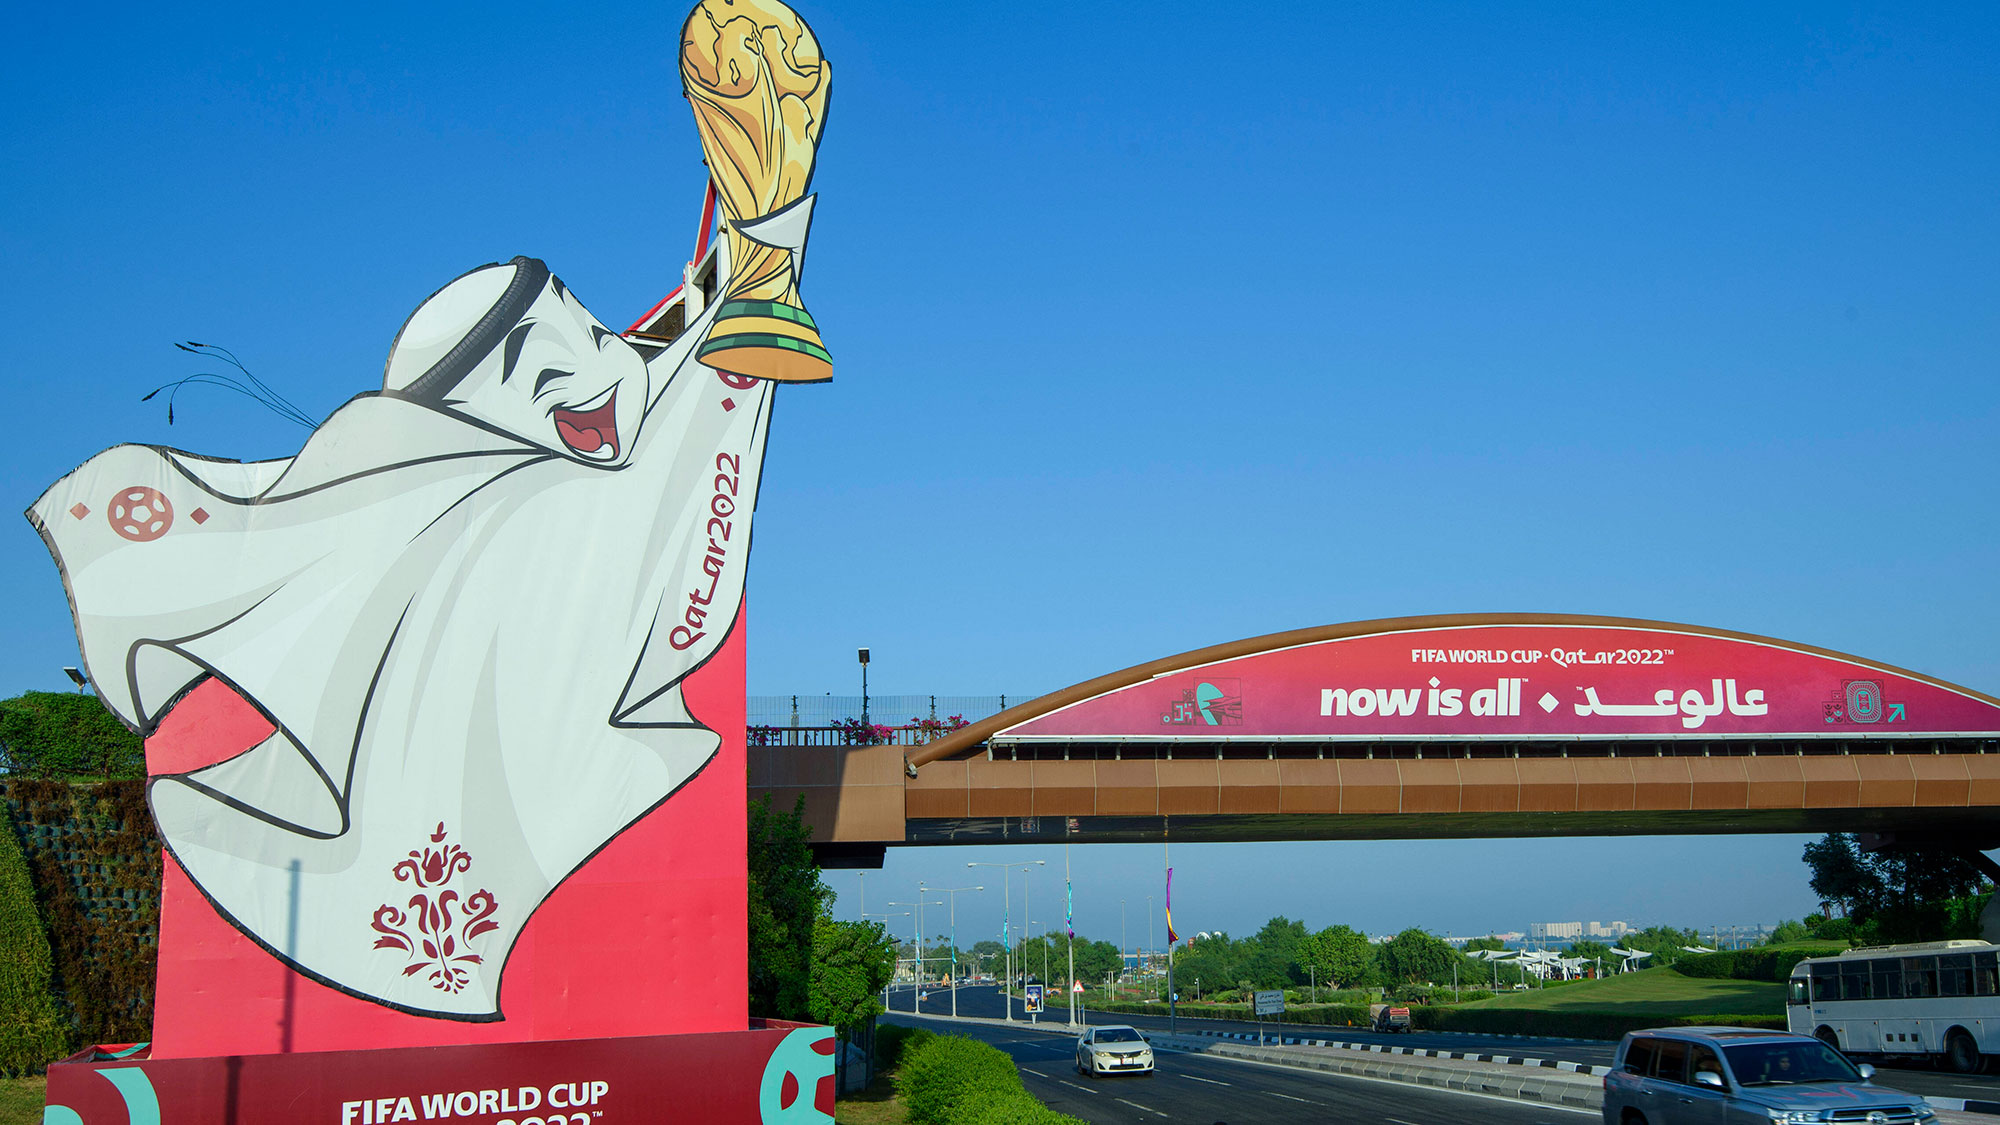 Fox evita polémica sobre Qatar en sus programas de radio del Mundial 2022